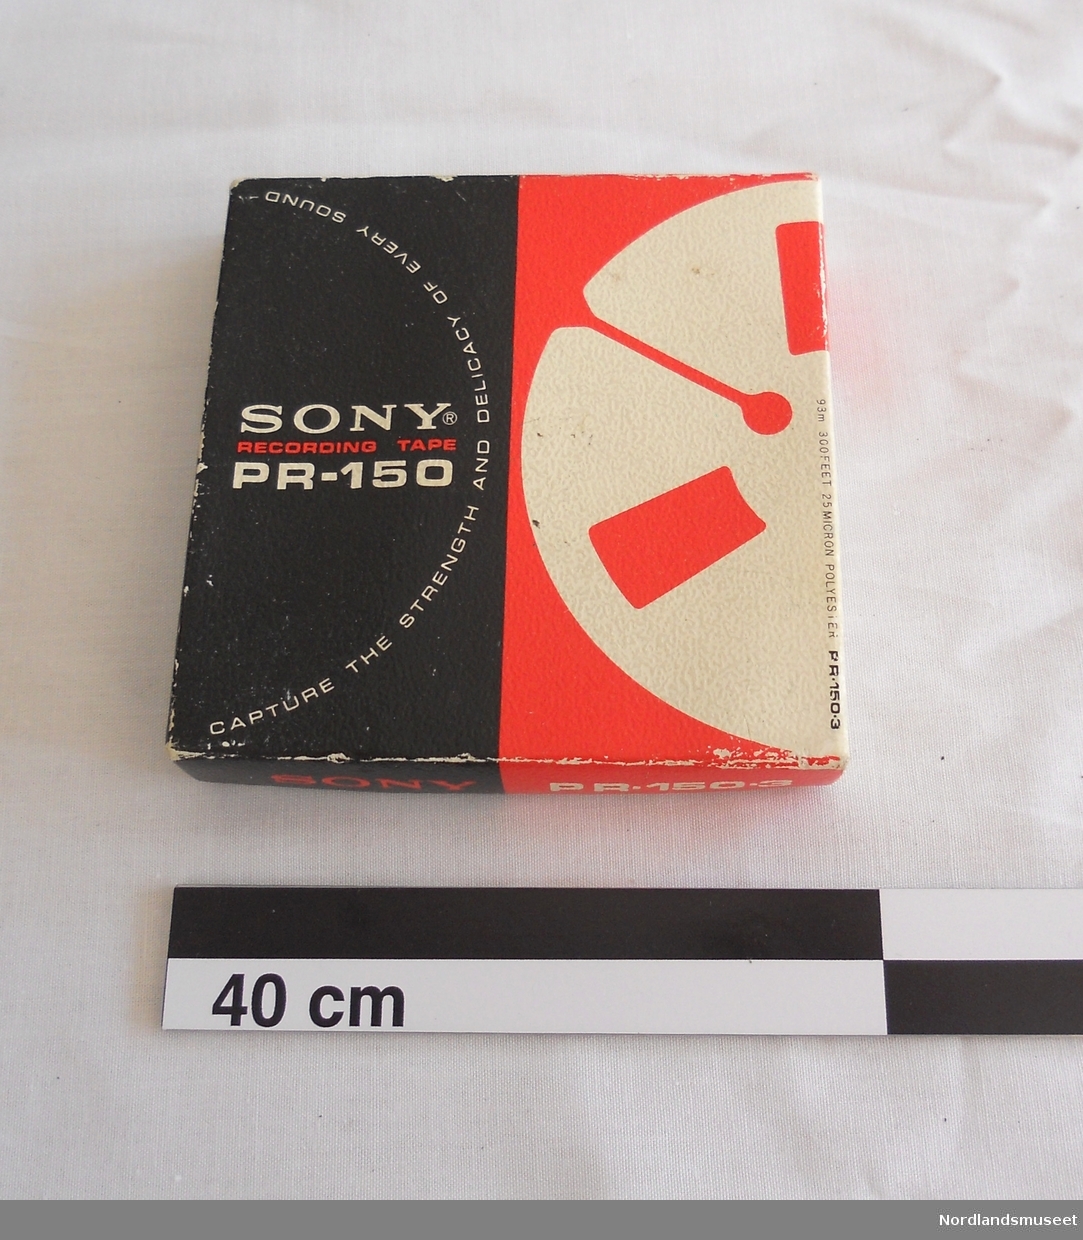 Lydbånd i eske. Type Sony recording tape PR-150-3 etter Lyder Kvantoland. Forseglingstapen er brutt, så det antas at båndet inneholder lydopptak.